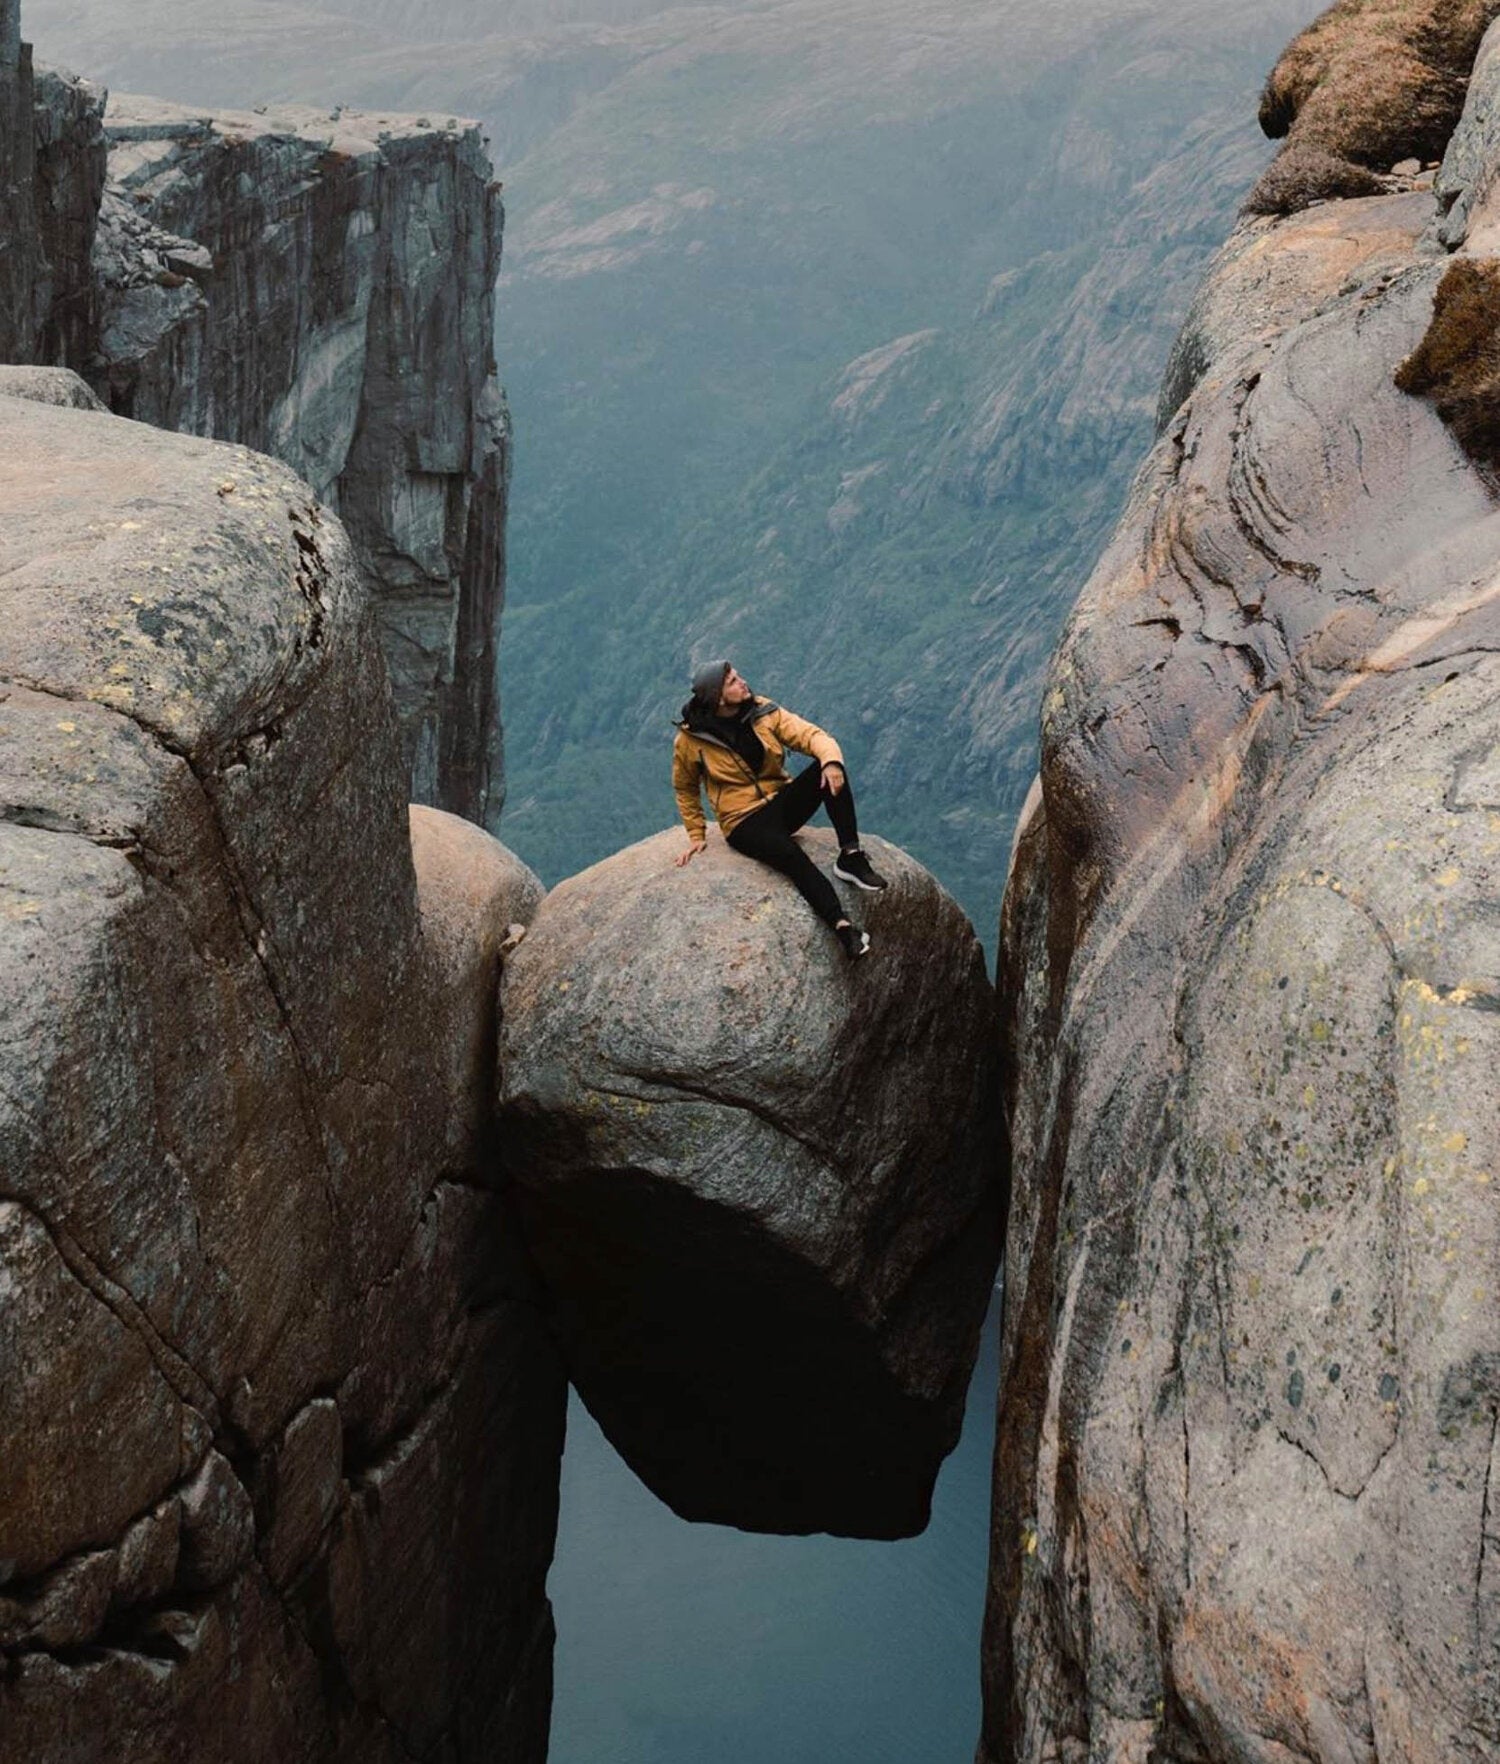 Lost LeBlanc on the rock at Kjerag, Norway